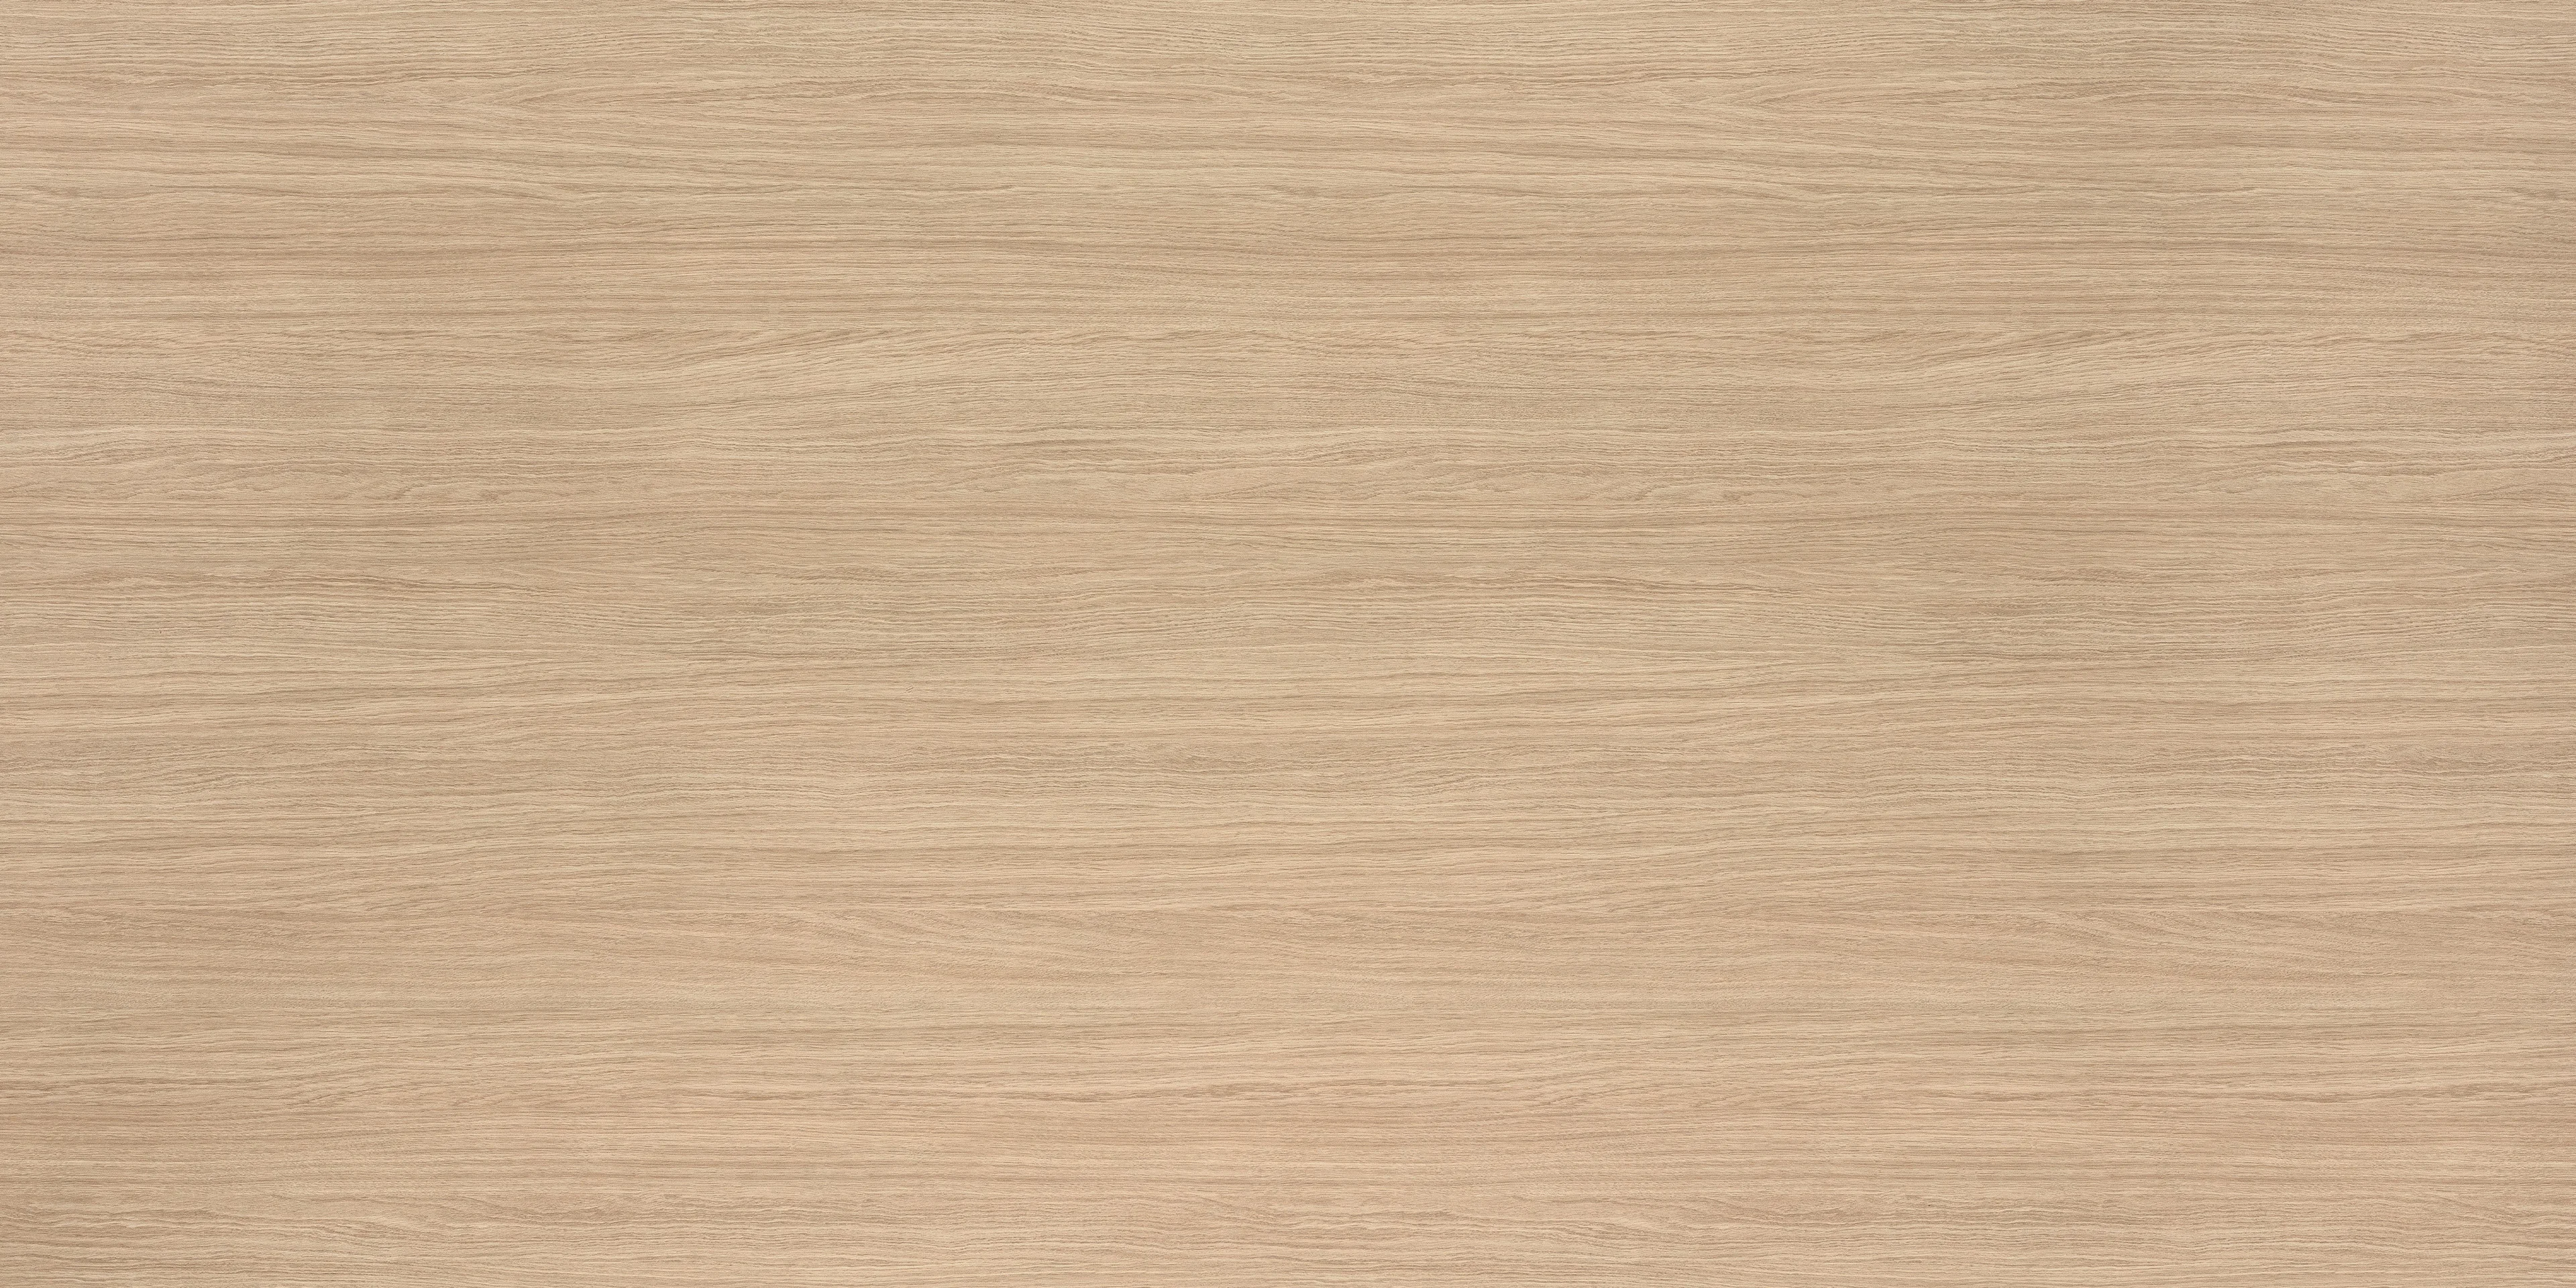 TSFC024 in natural oak furniture board